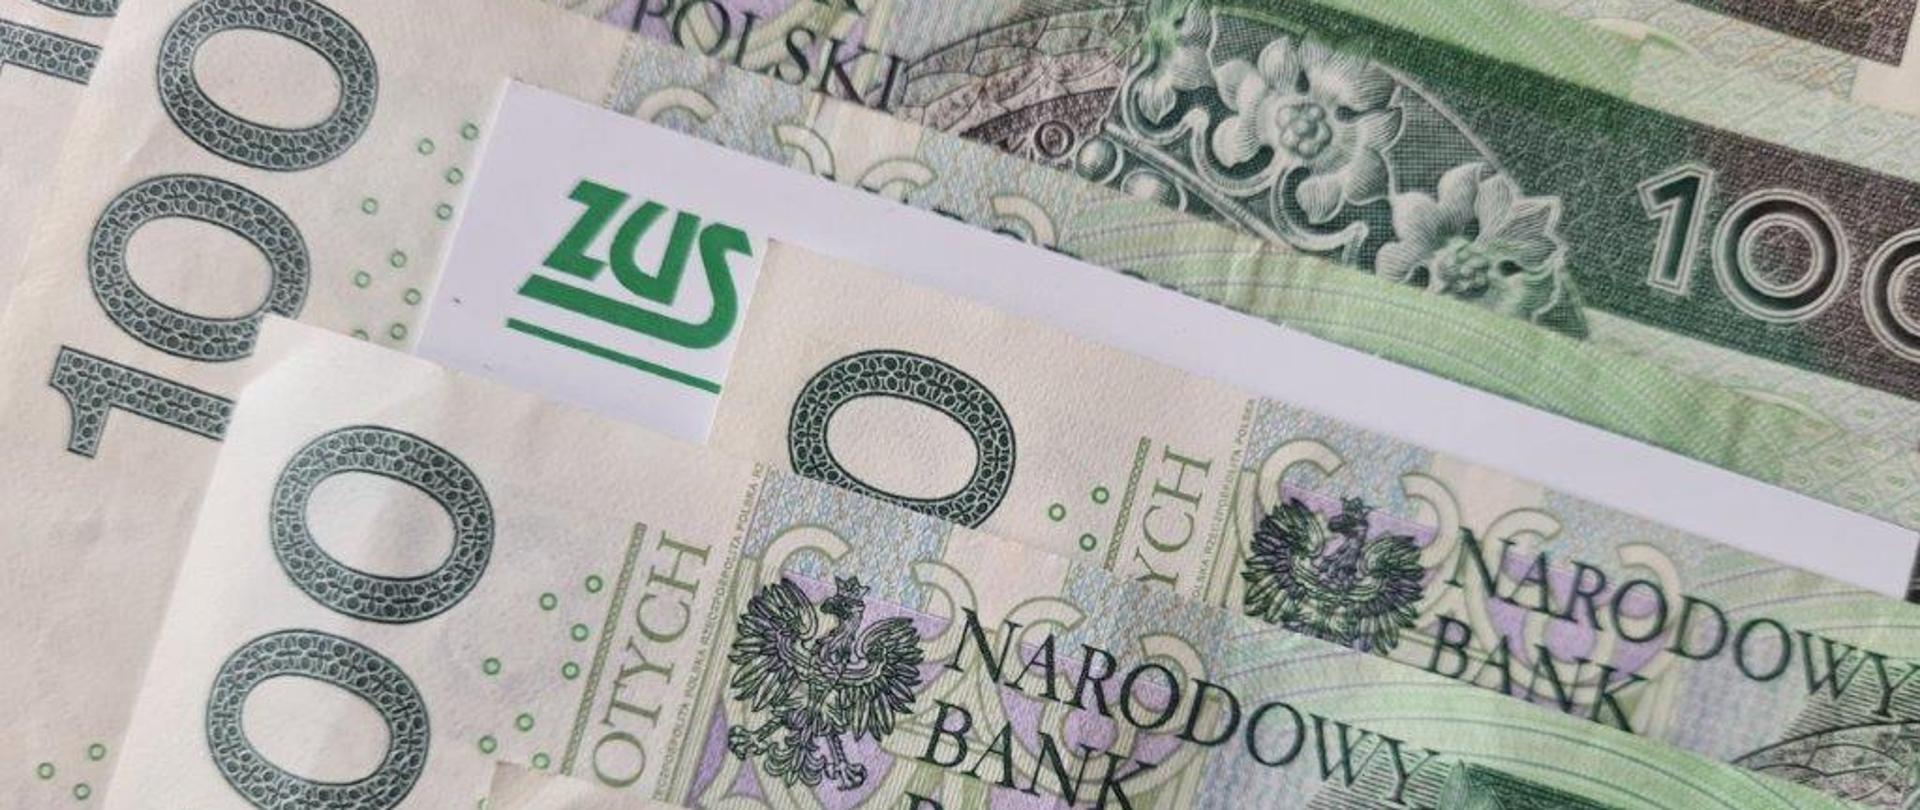 Informacja ZUS - obrazek przedstawia banknoty 